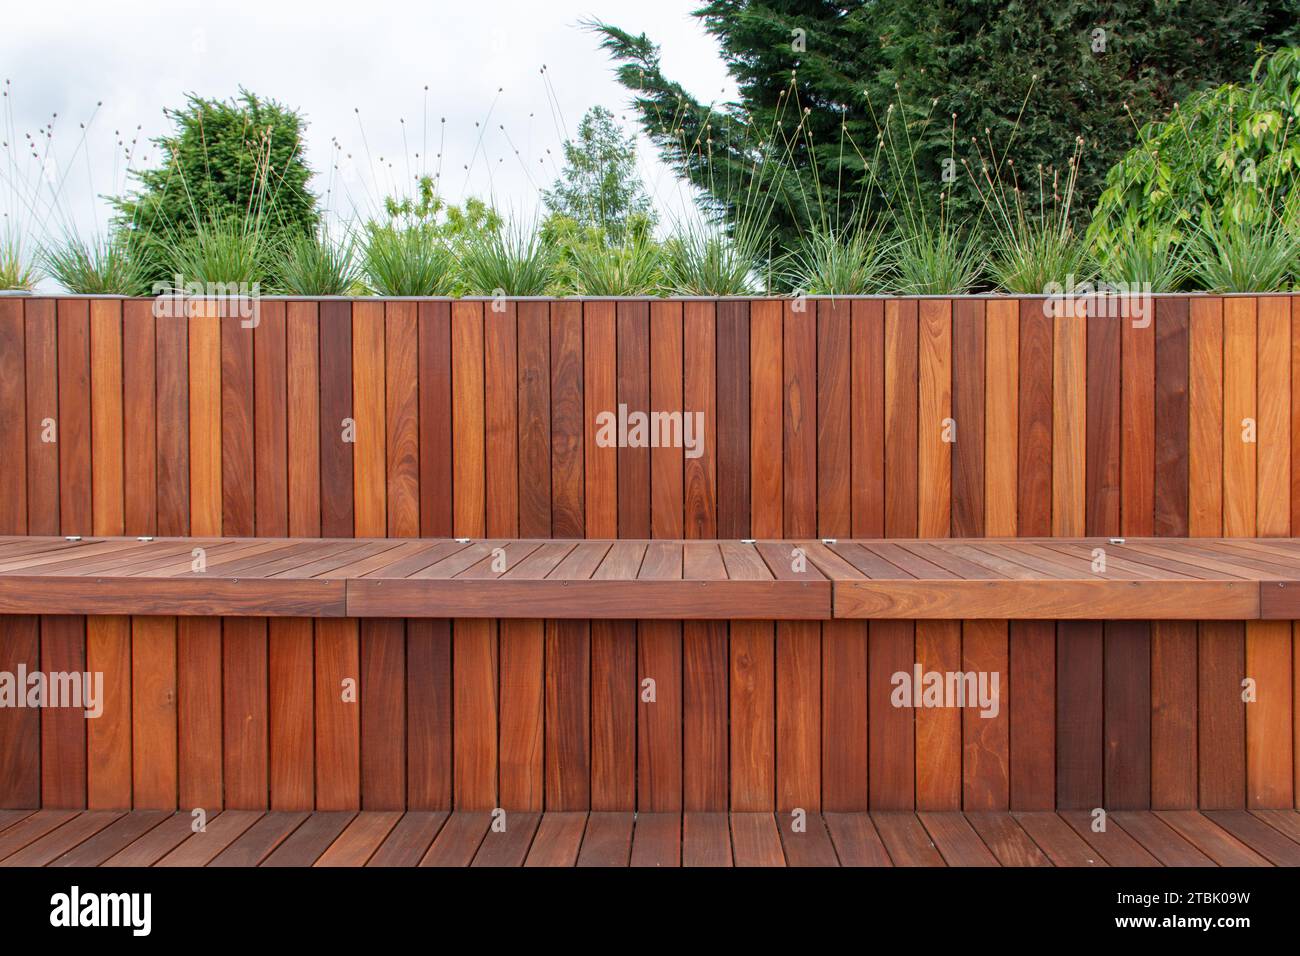 Rivestimento e pavimentazione in legno per recinzioni, vegetazione da giardino sulla parte superiore, linee orizzontali e verticali Foto Stock